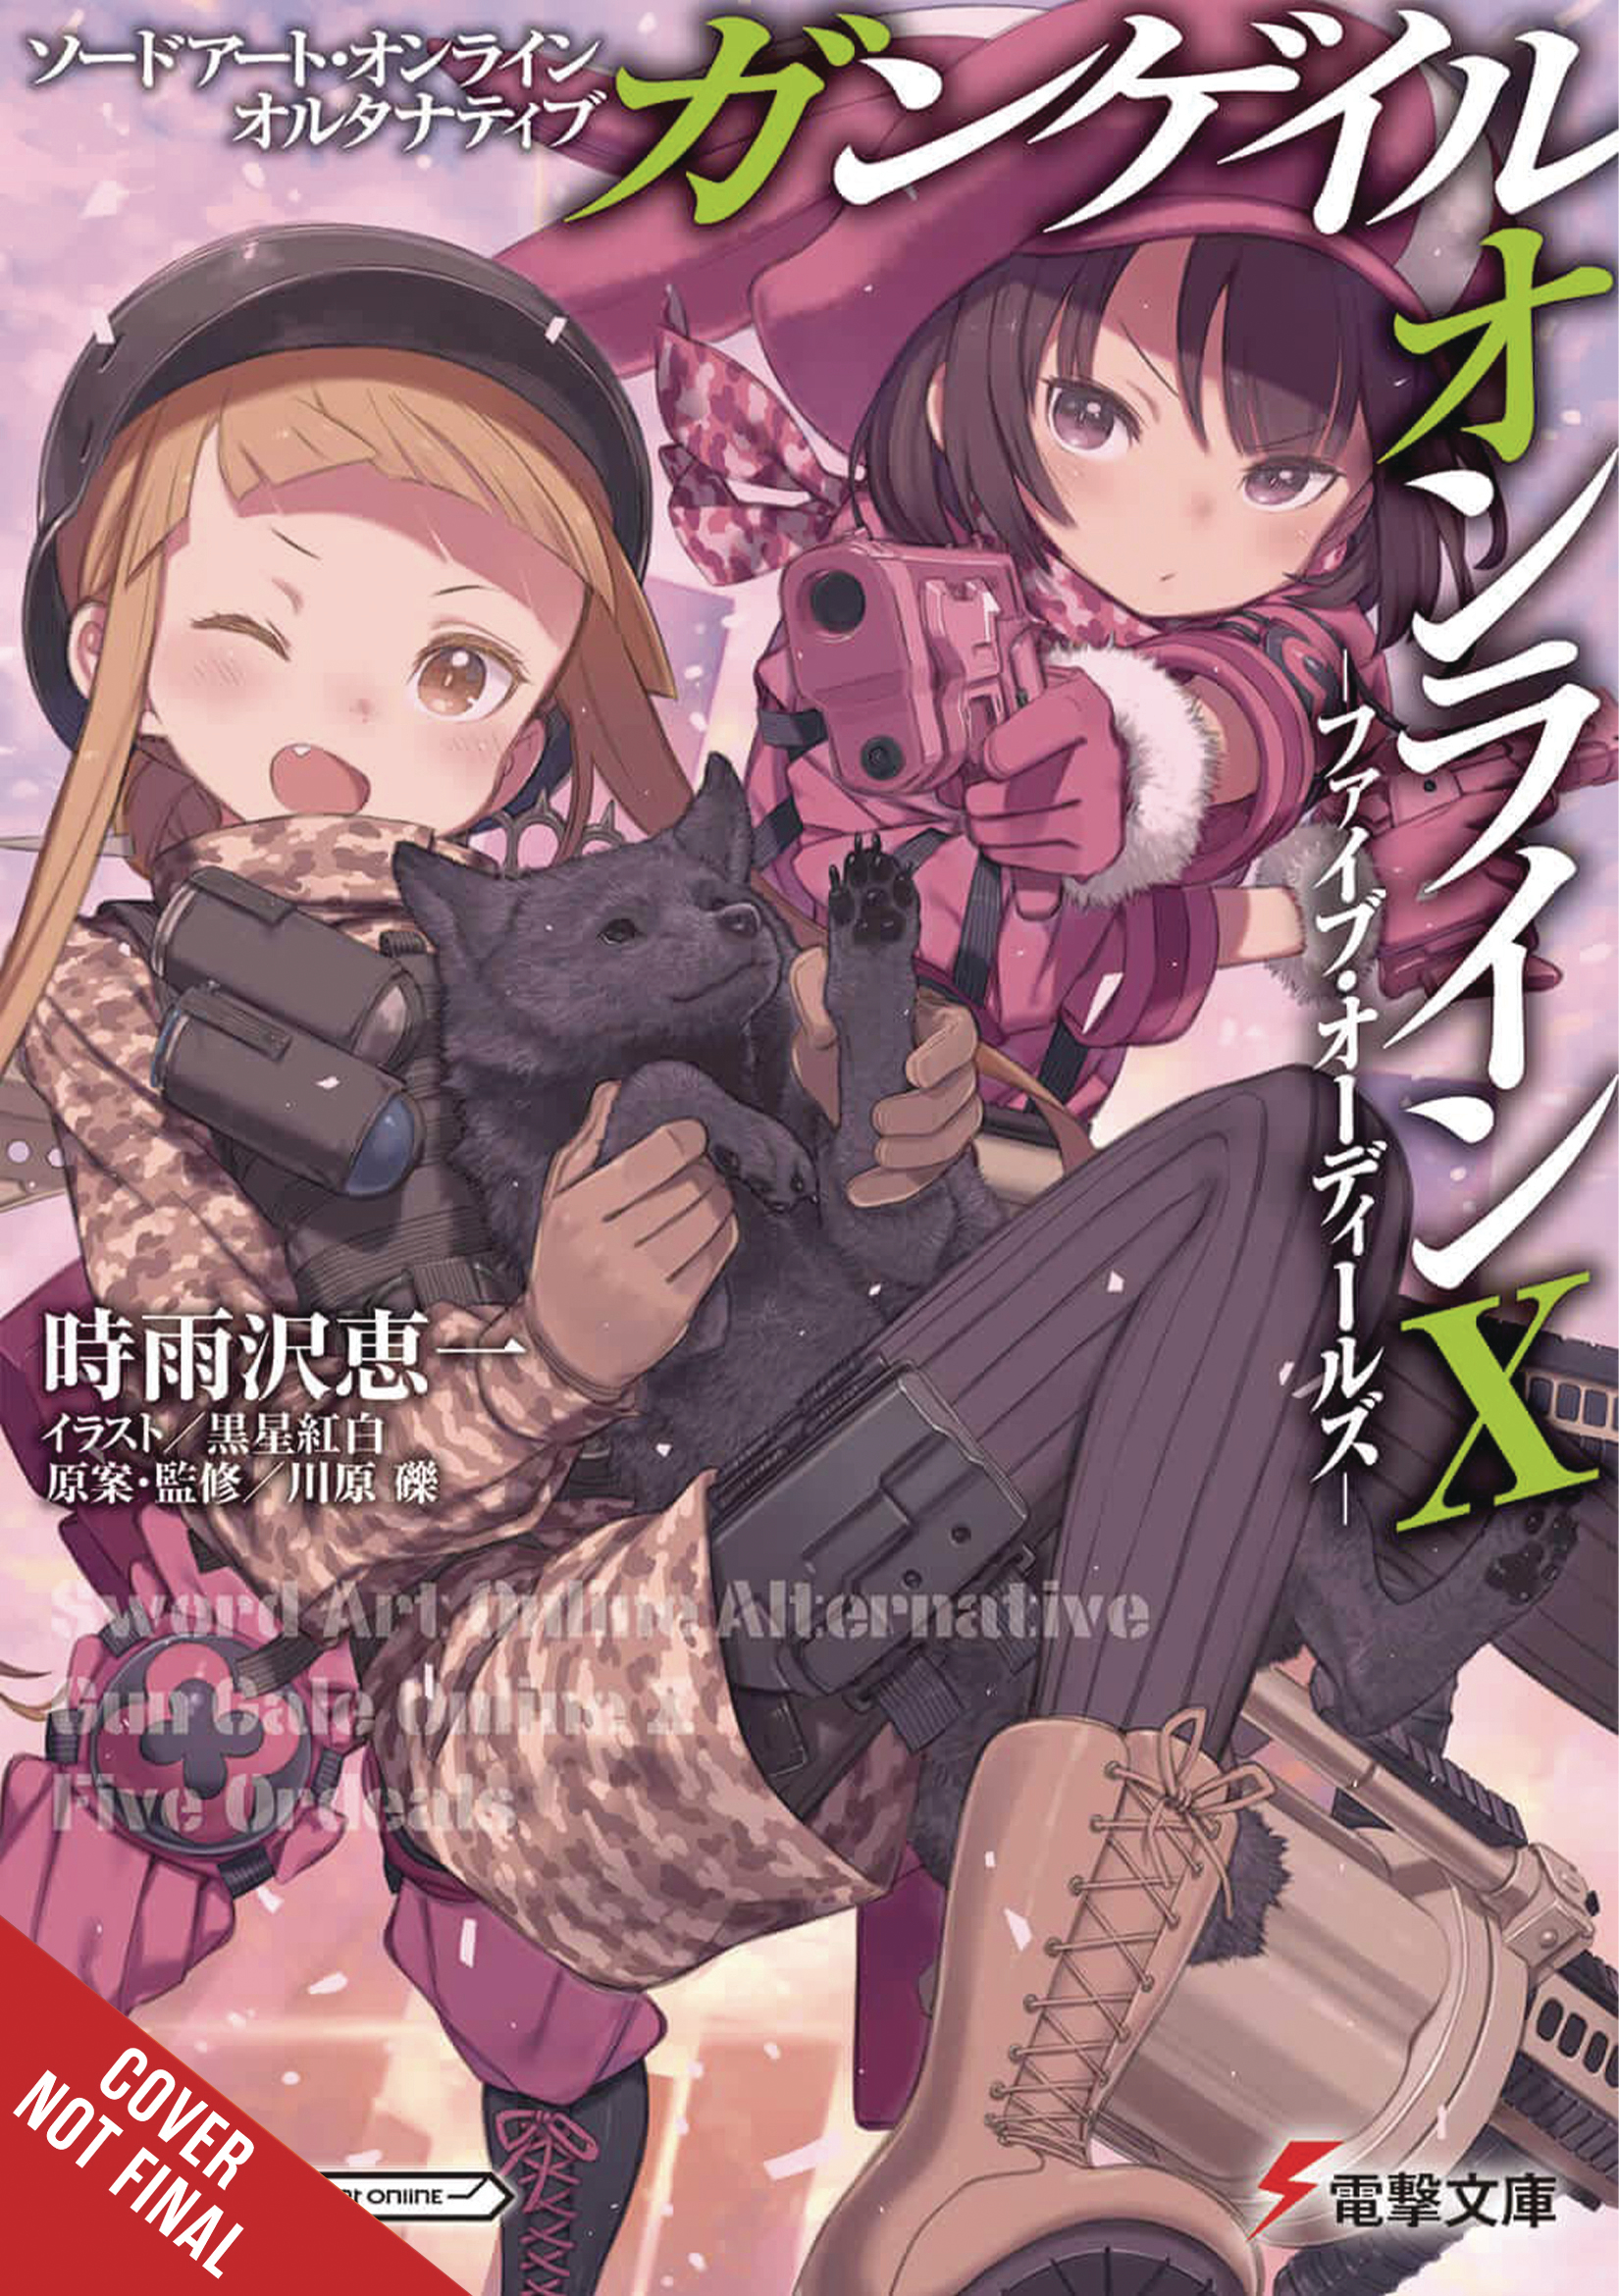 Sword Art Online Alt Gun Gale Light Novel Volume 10